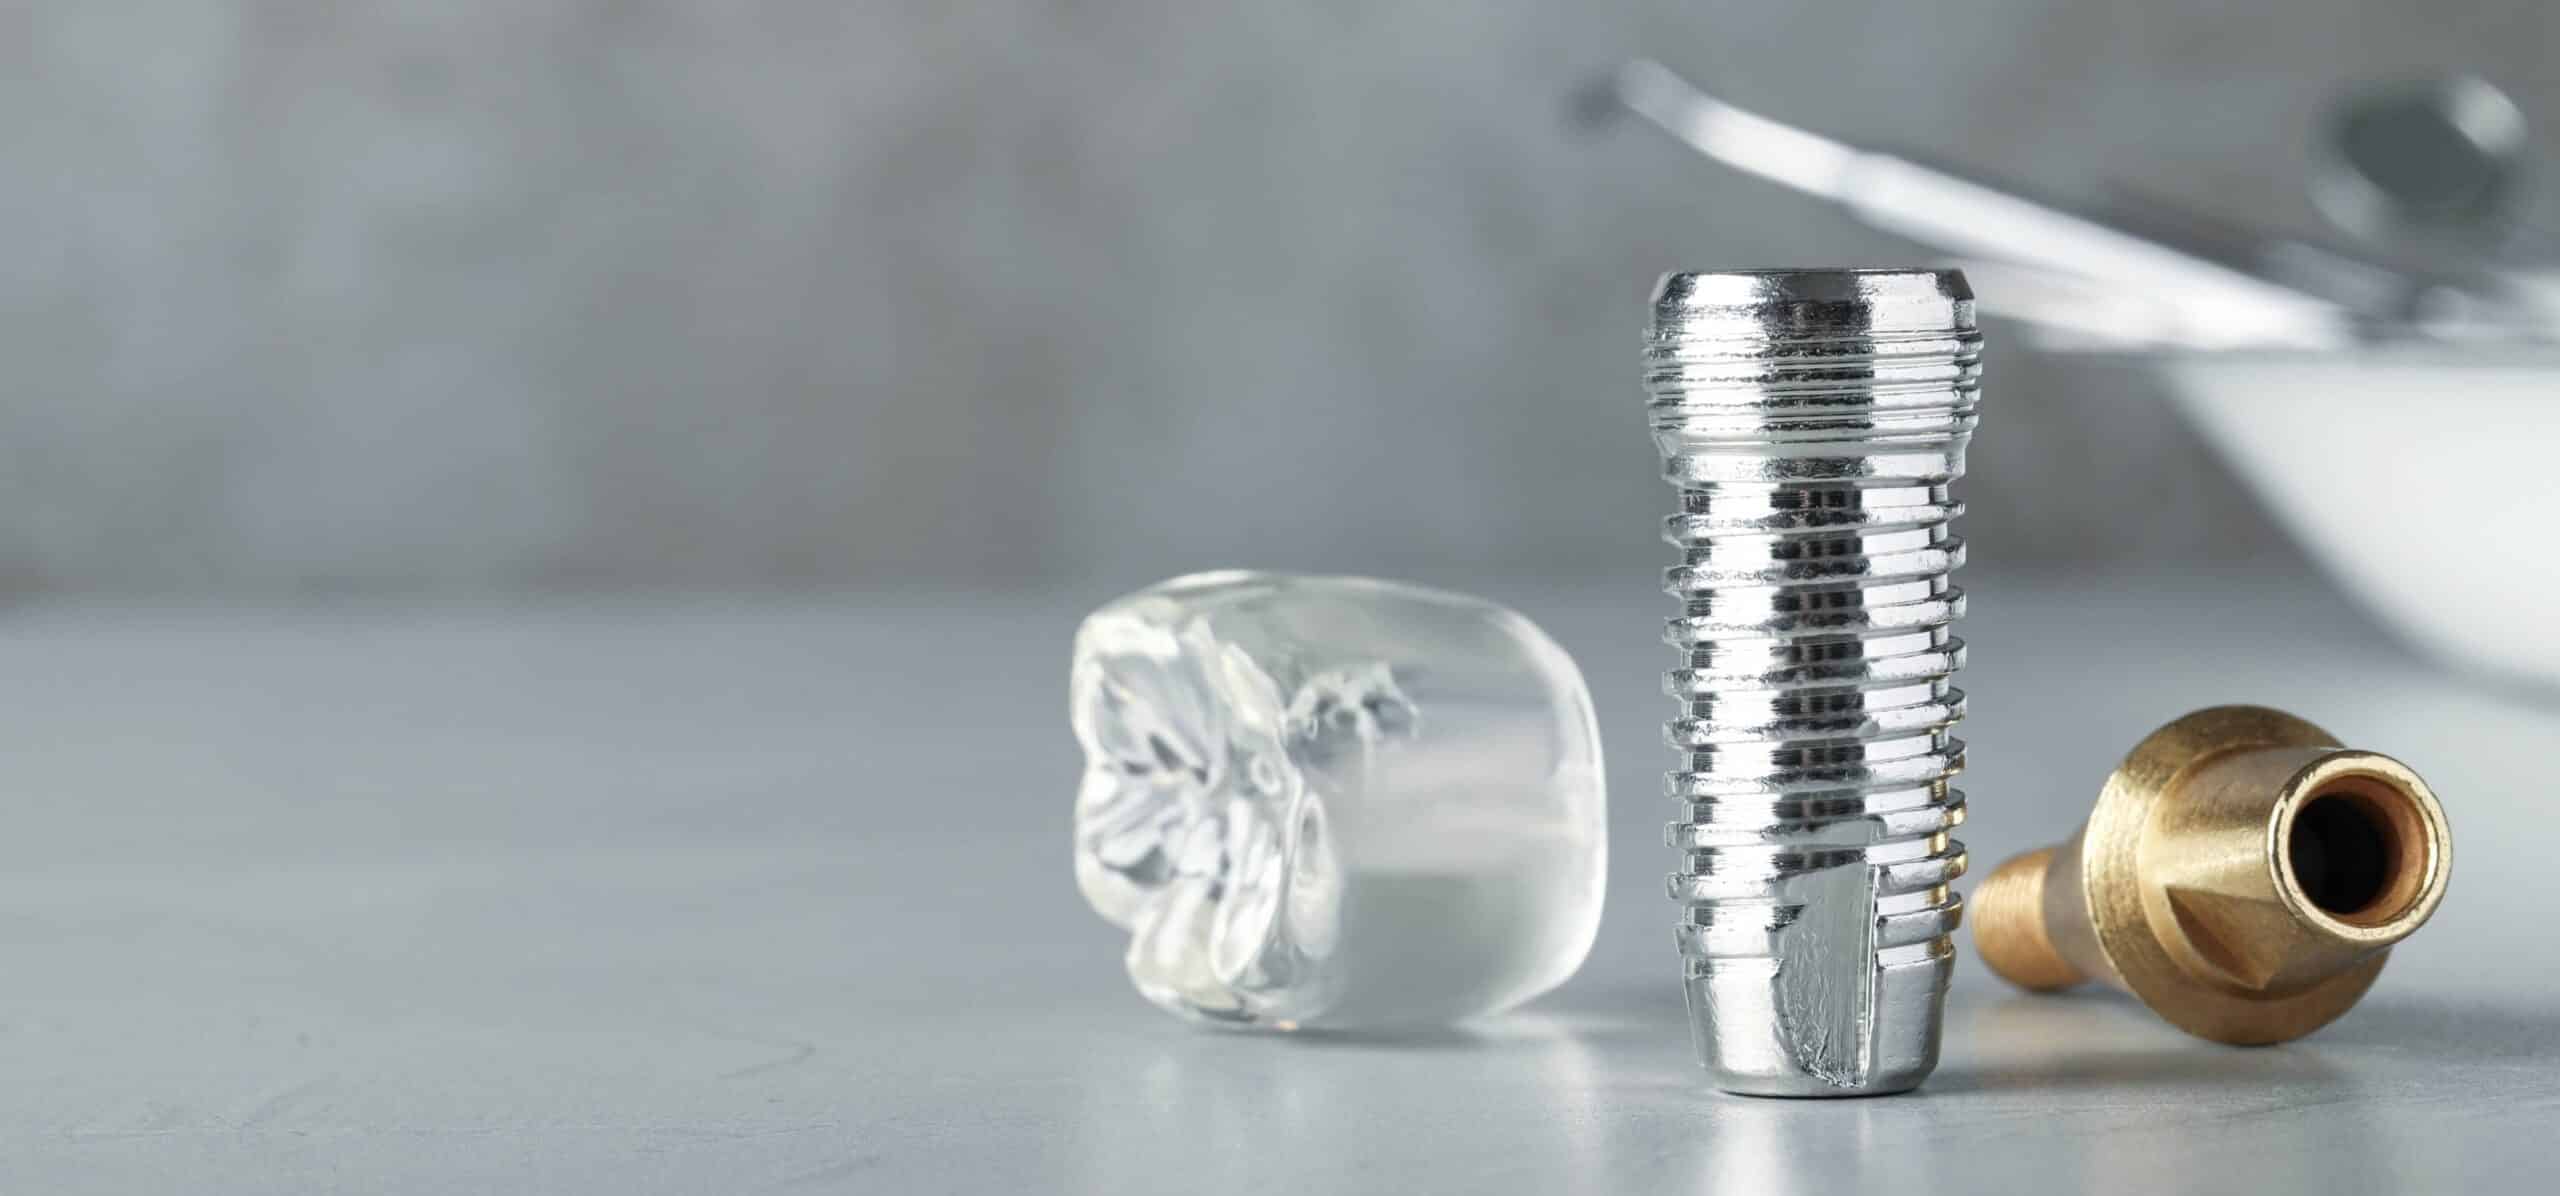 Comment se déroule la pose d’un implant dentaire ? Dr Temstet | Paris